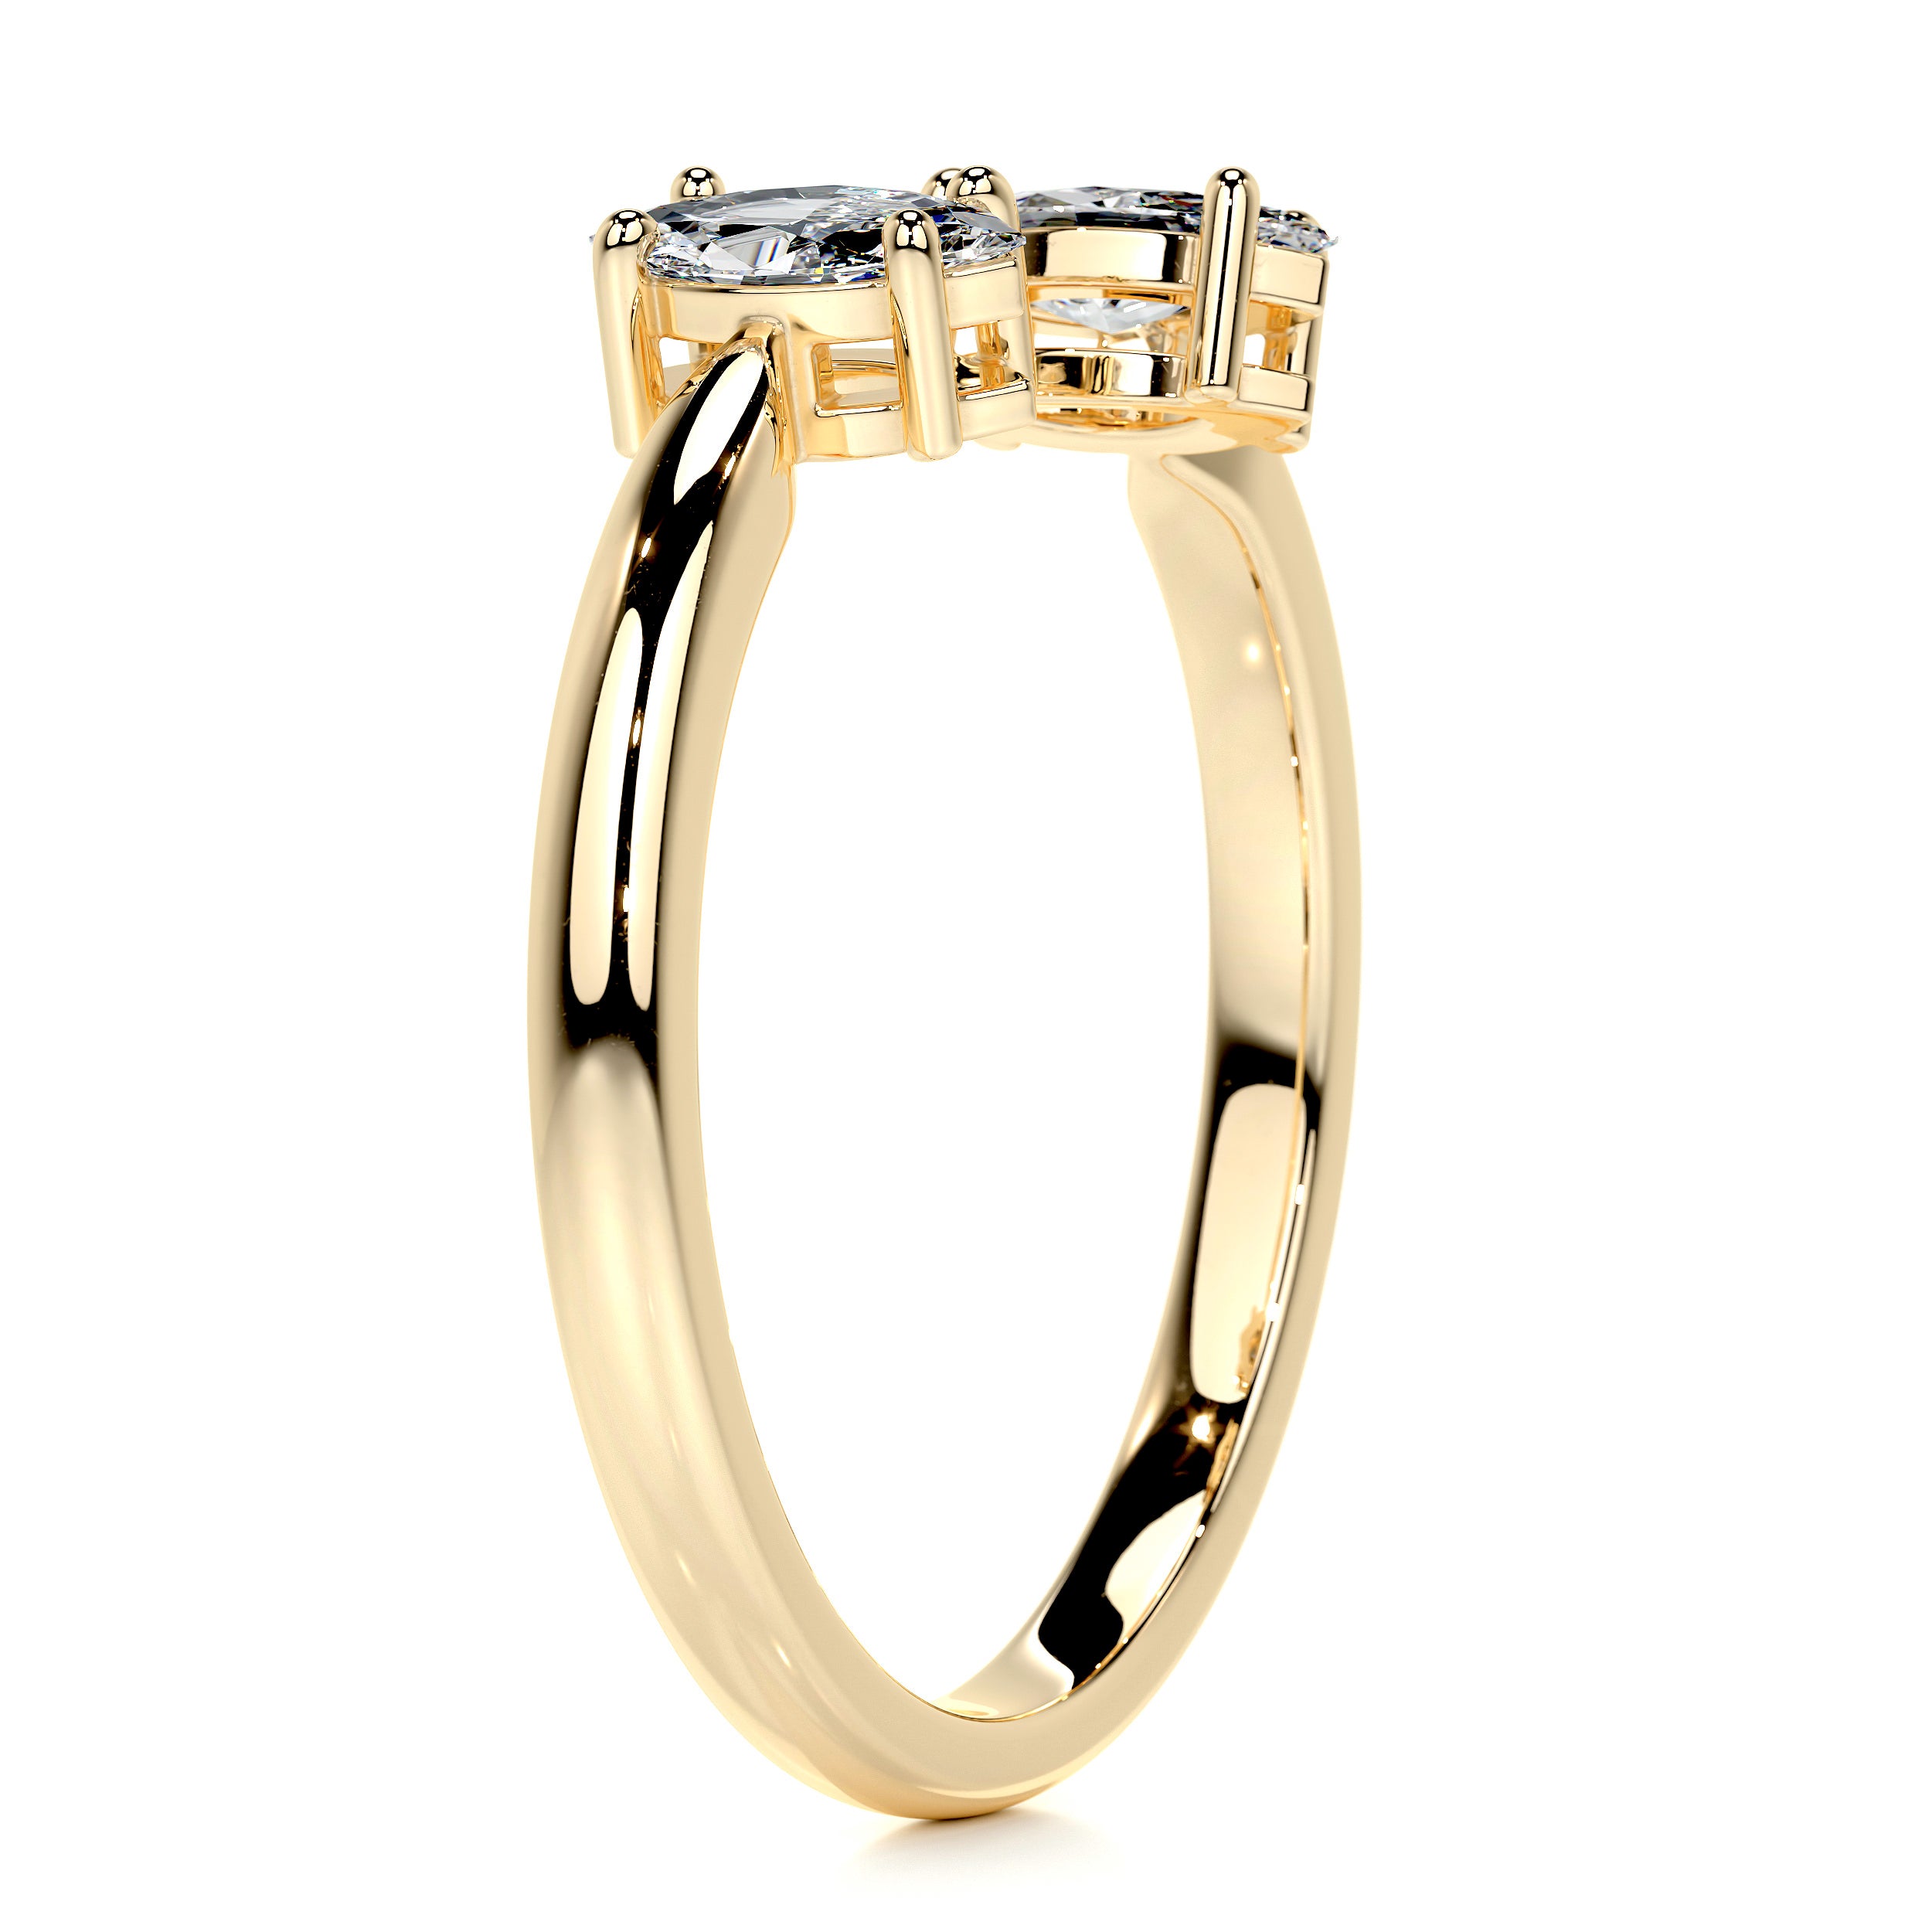 Celine Fashion Ring   (0.36 Carat) -18K Yellow Gold